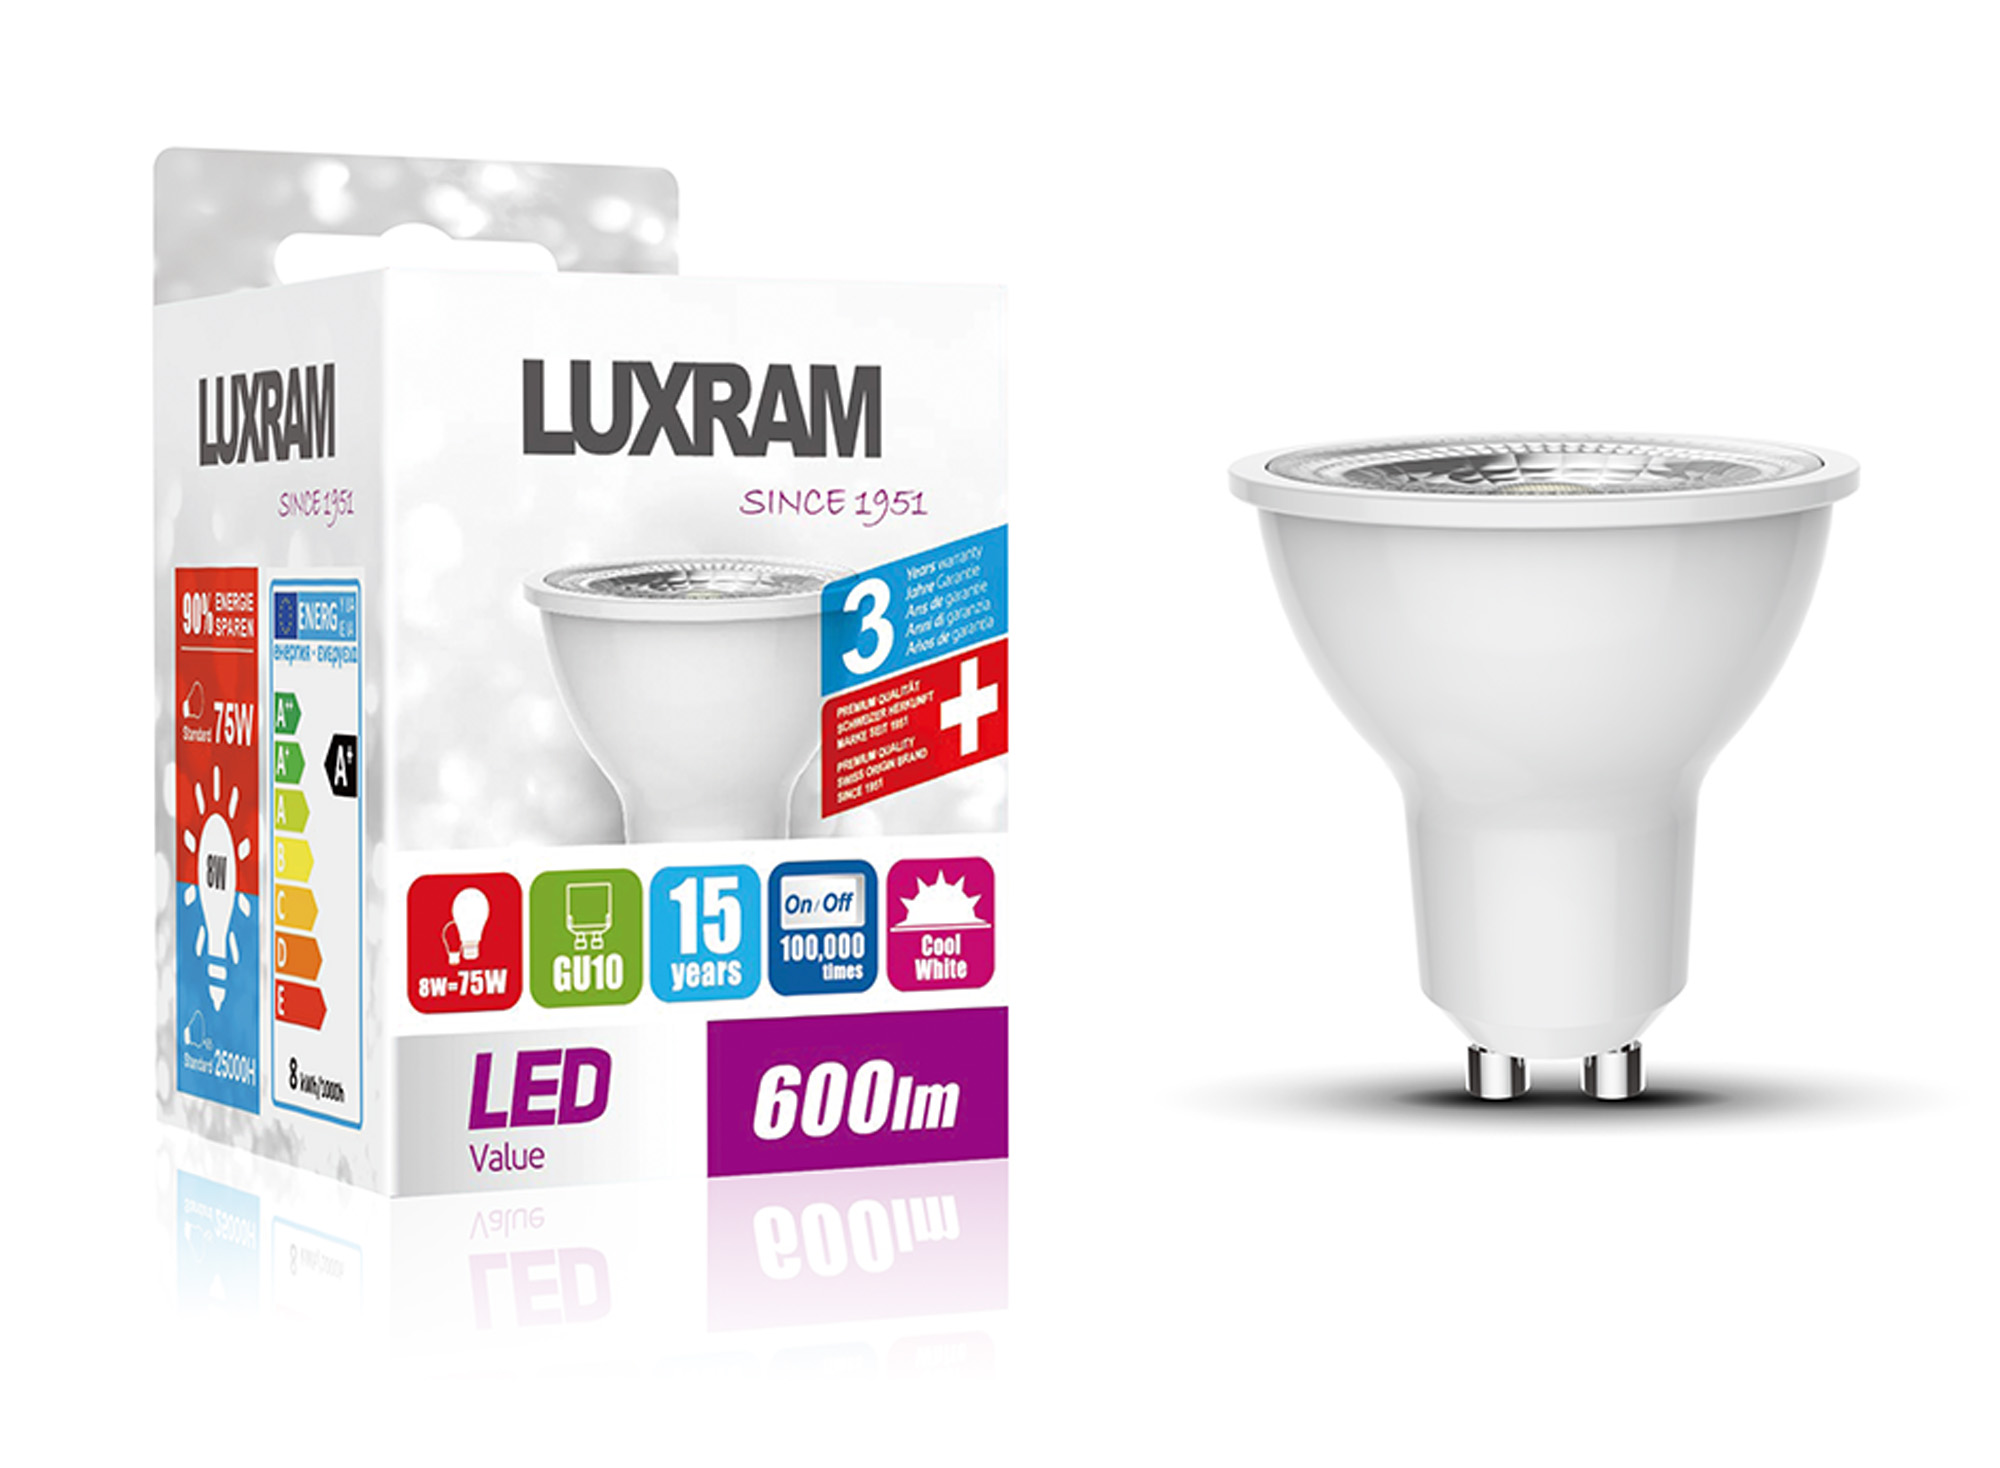 GU10 LED Bulb 6Watt Cool White 6400K Dimmable